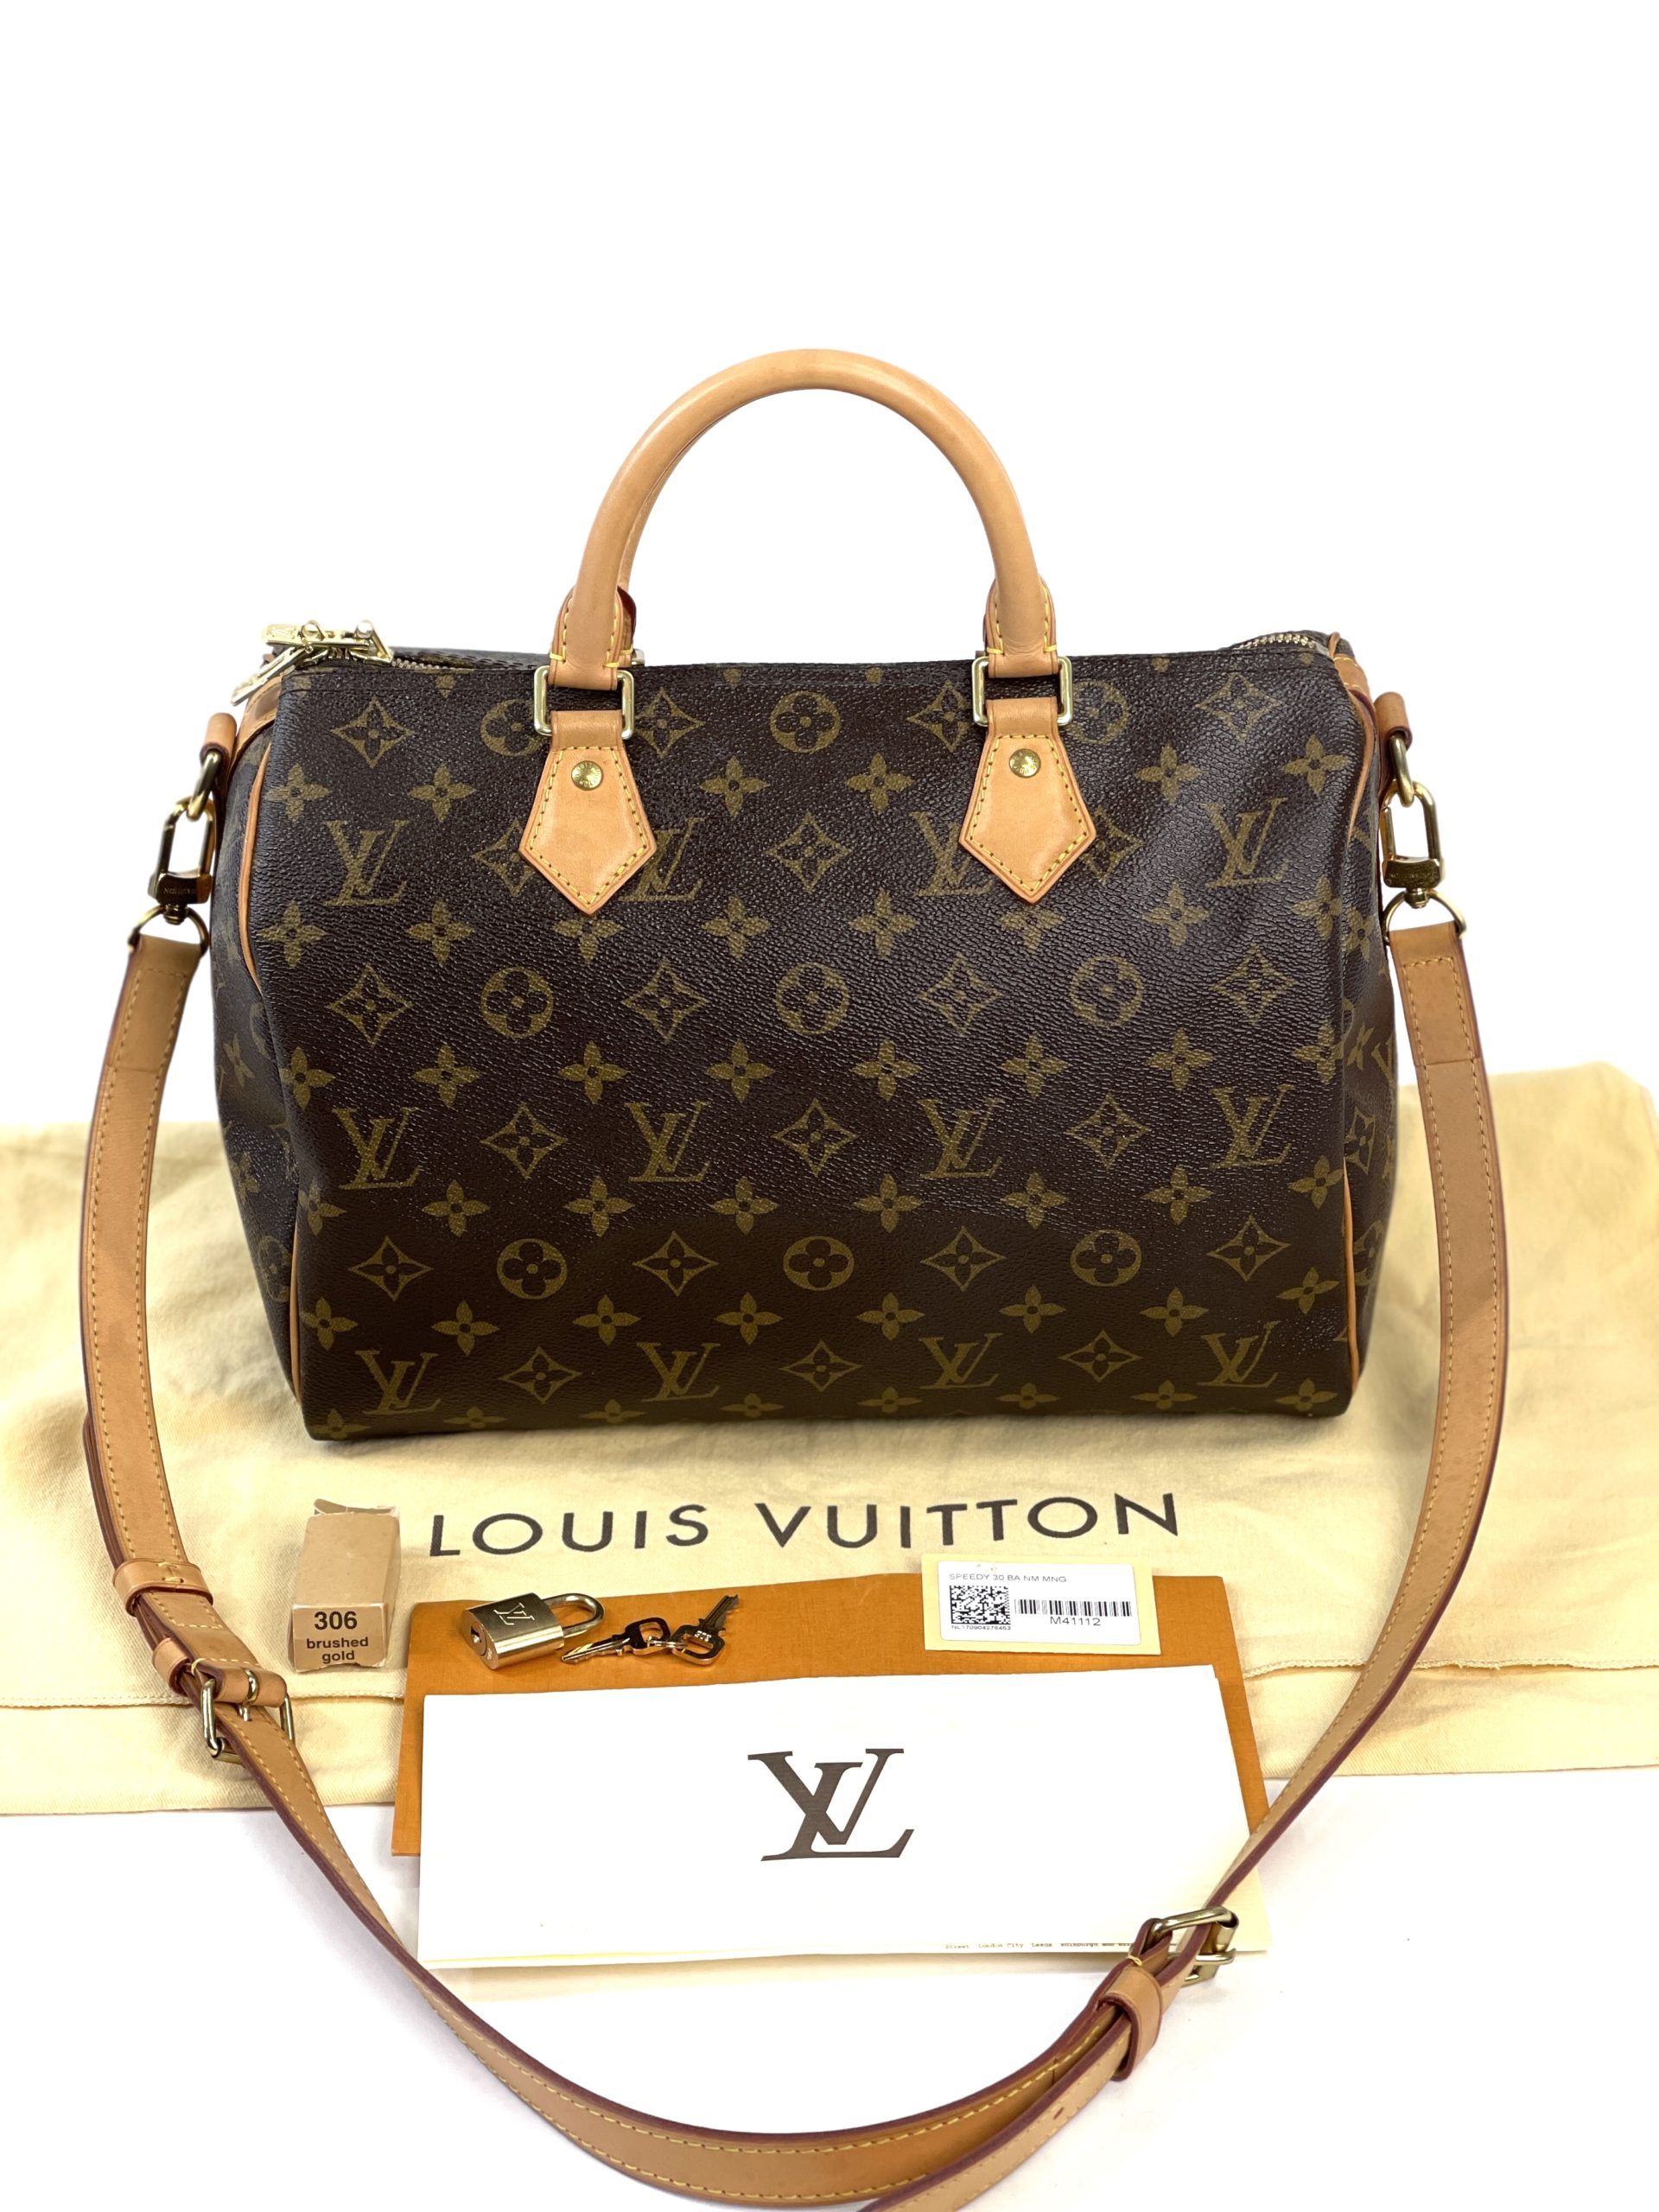 Louis Vuitton Damier Canvas Speedy Bandouliere 30 NM Bag